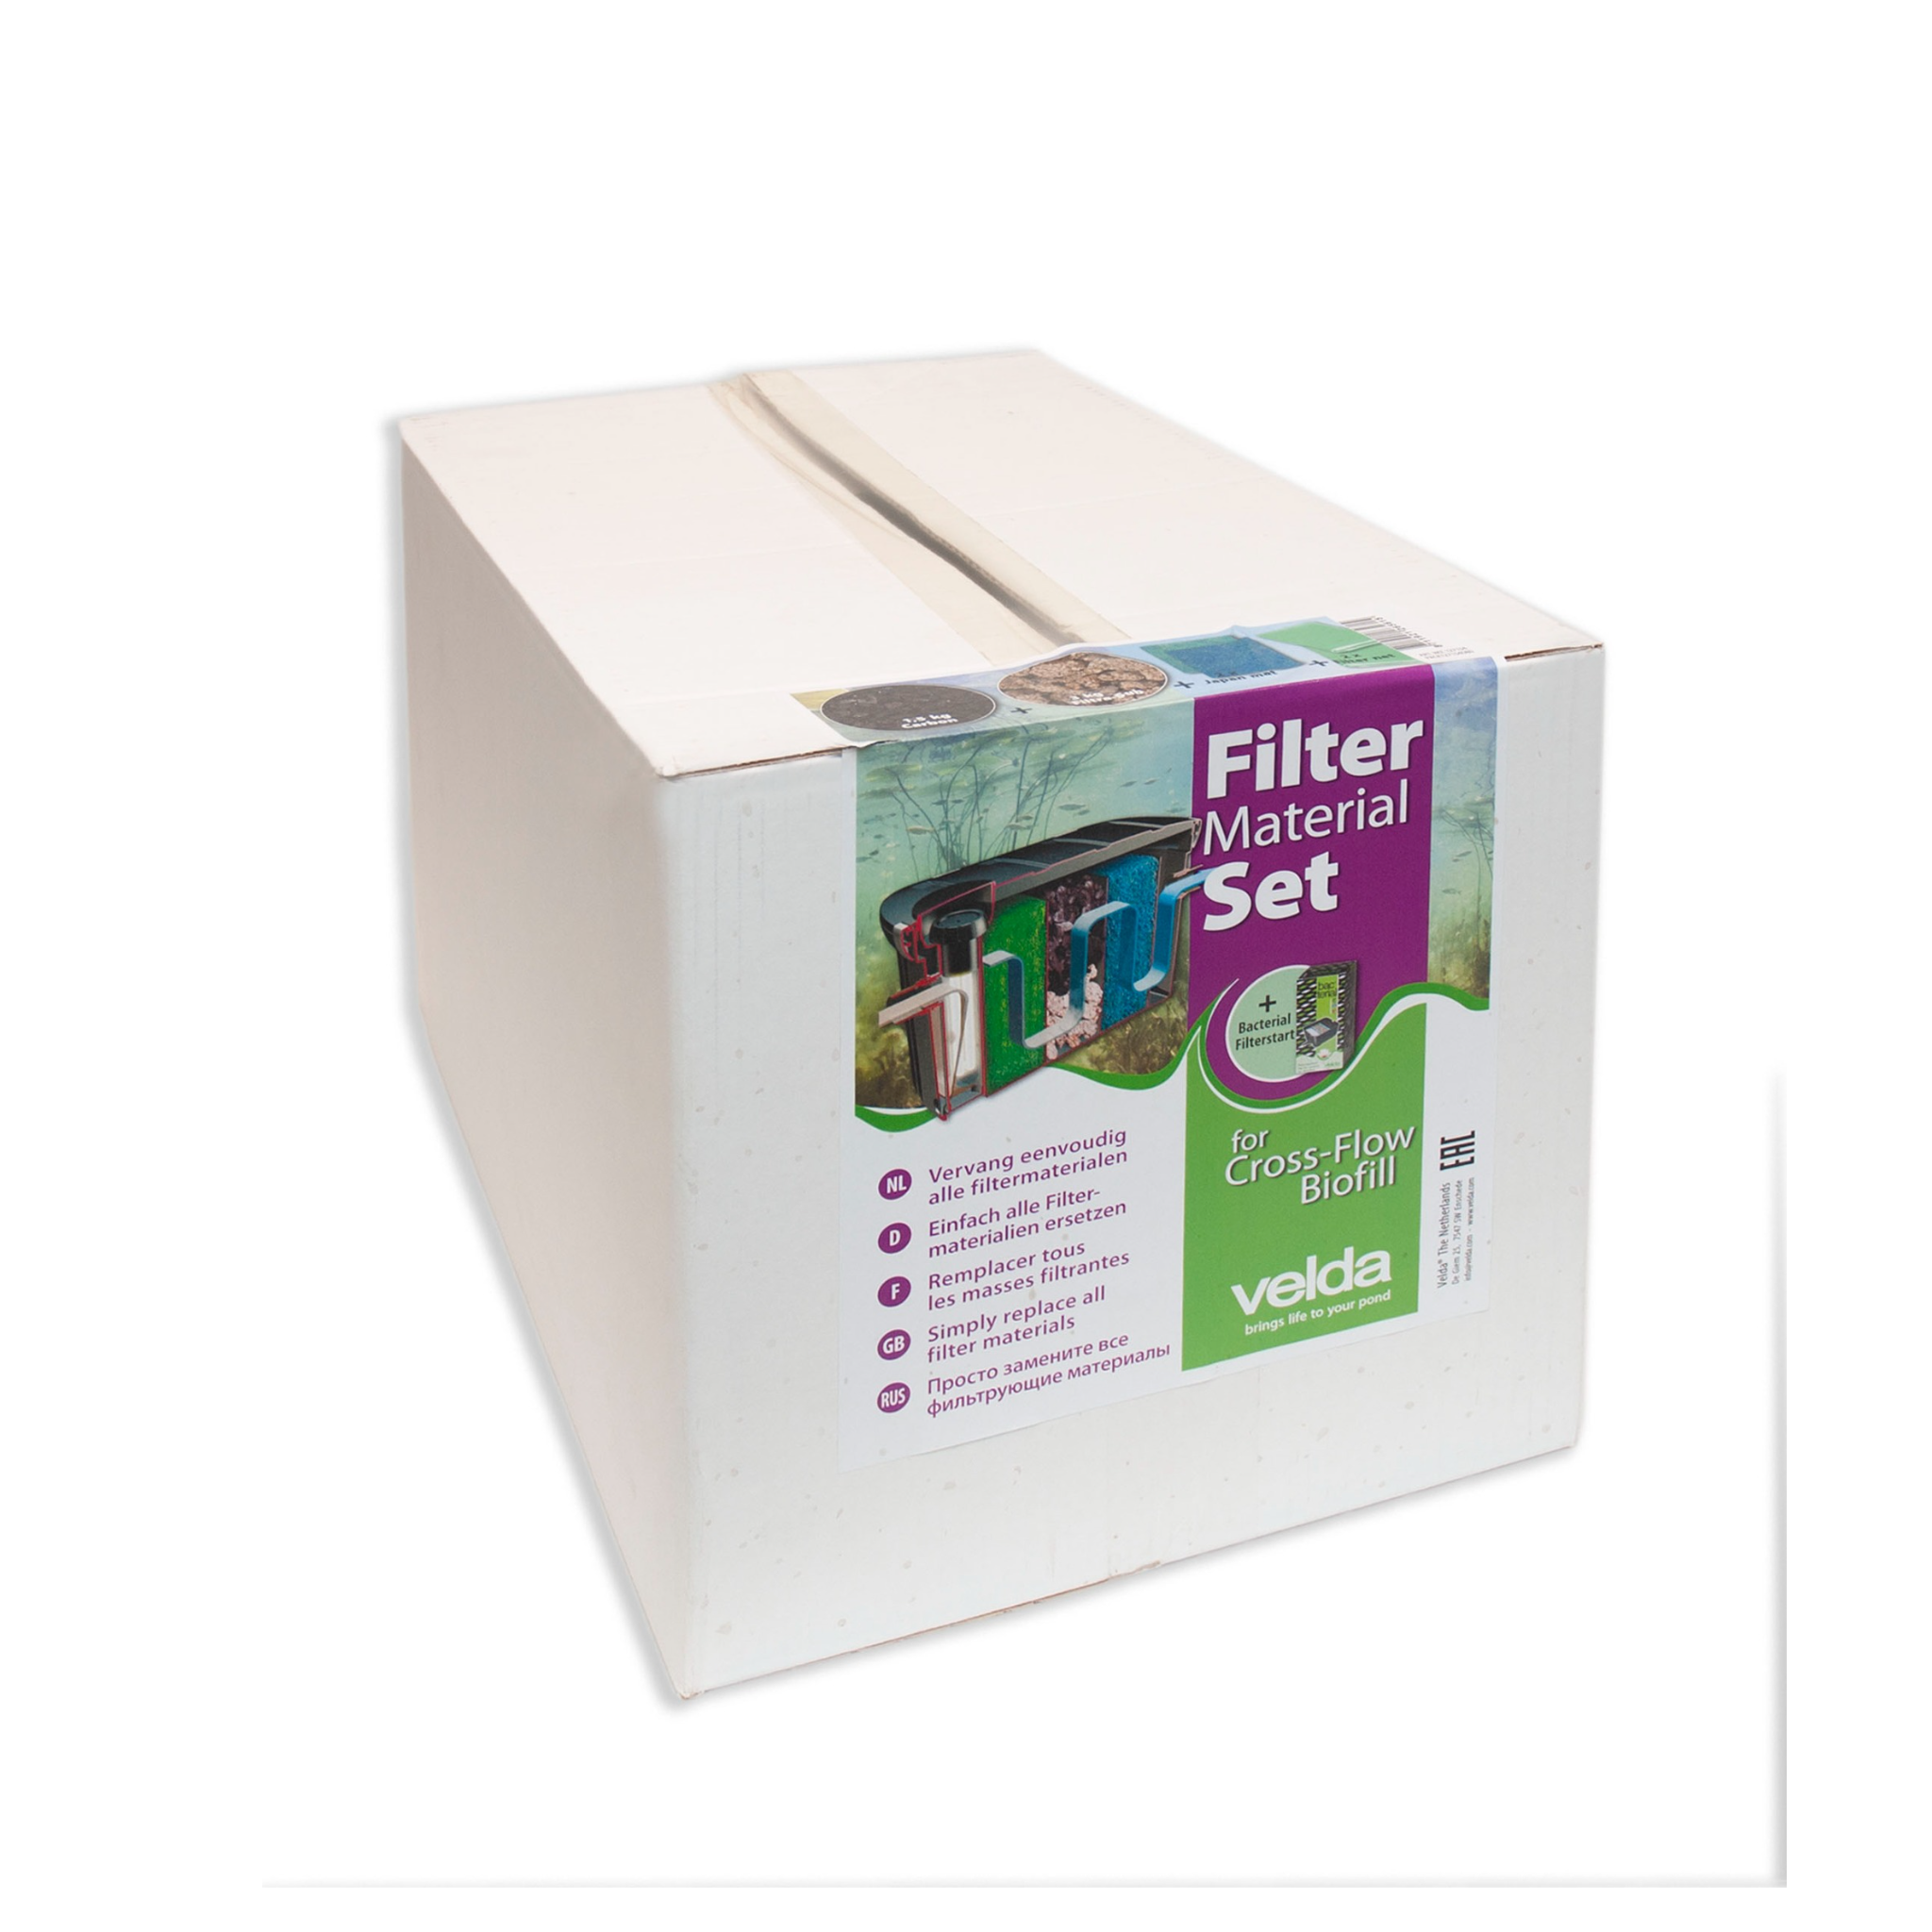 Cross Flow Biofill Filter Material Set